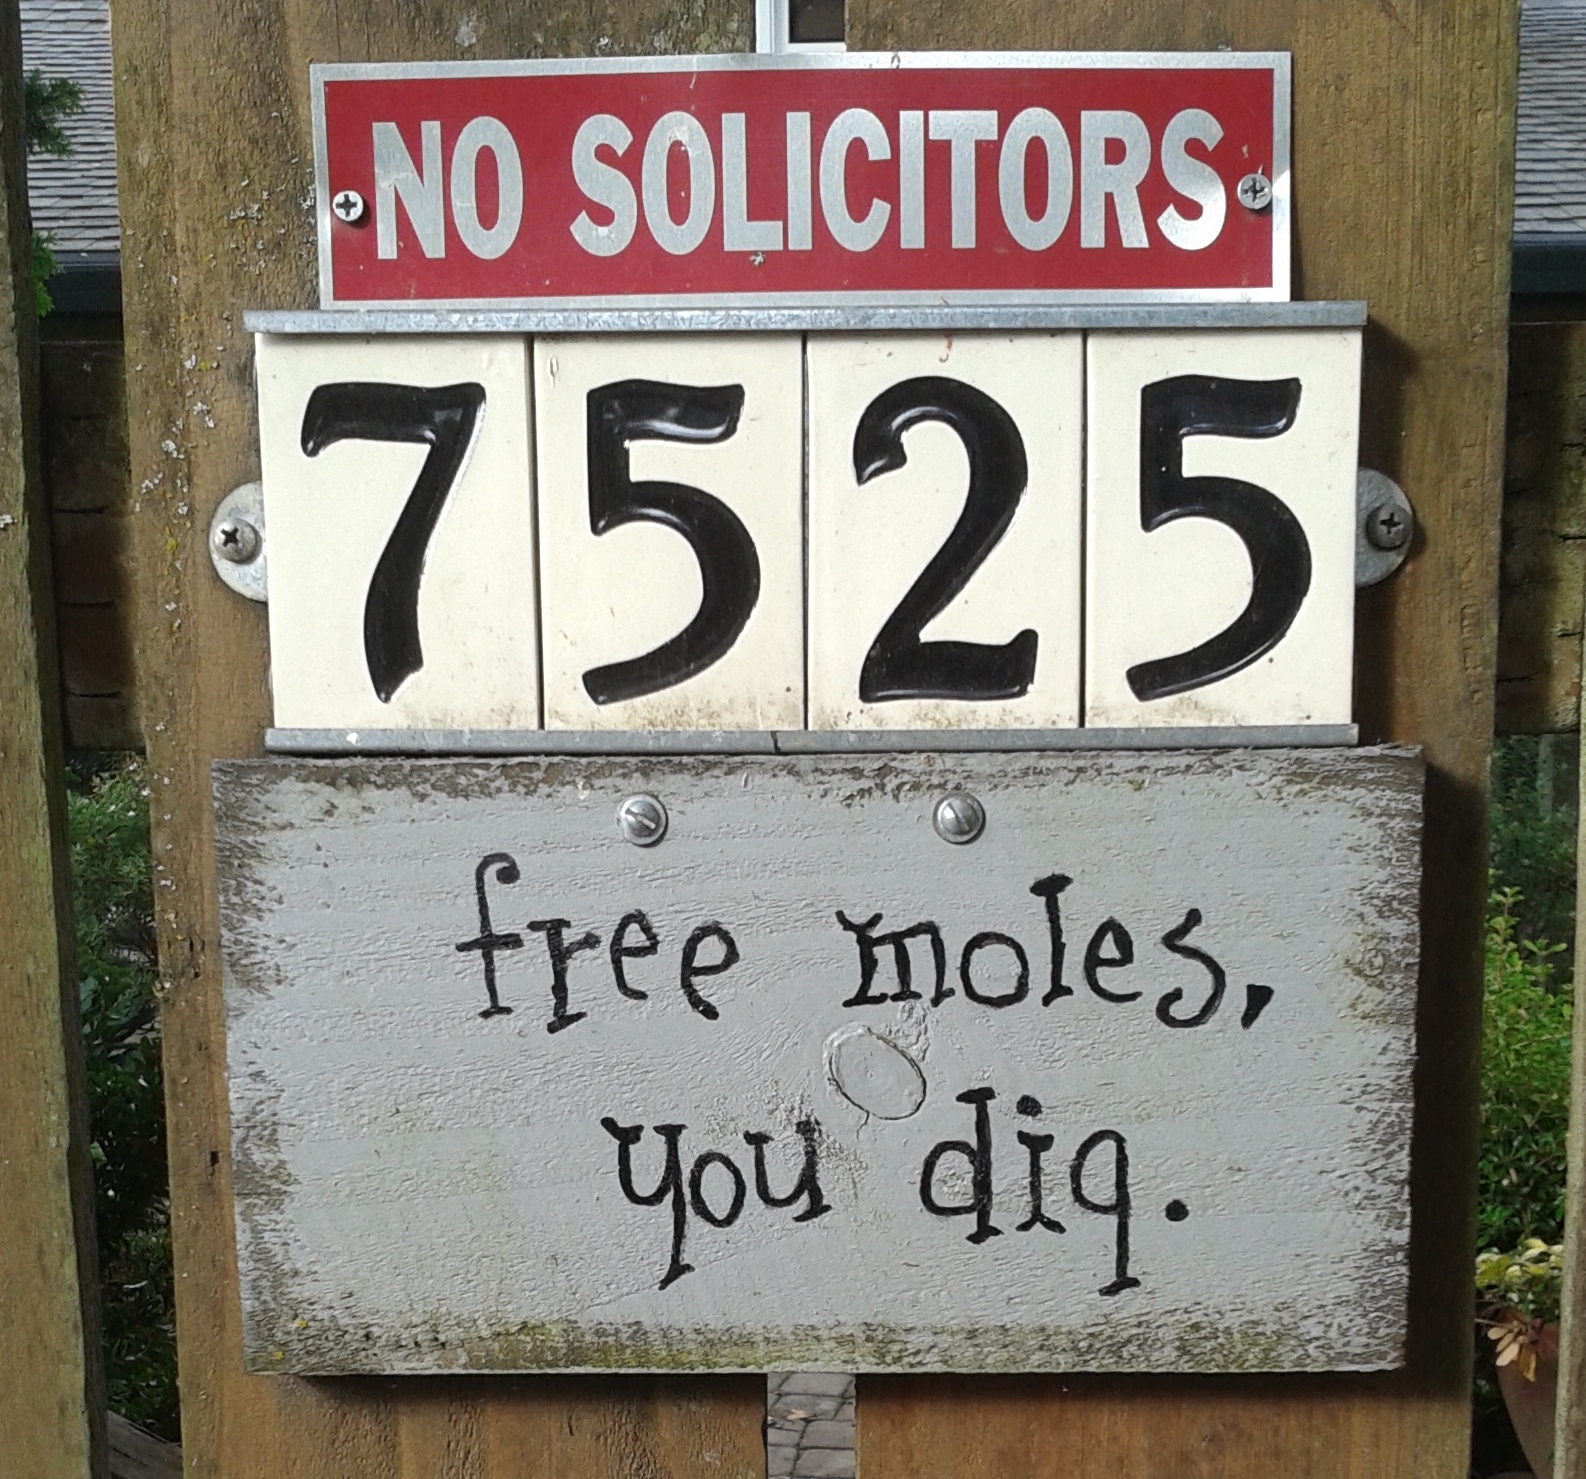 Free moles, you dig. Near April Hill Park.